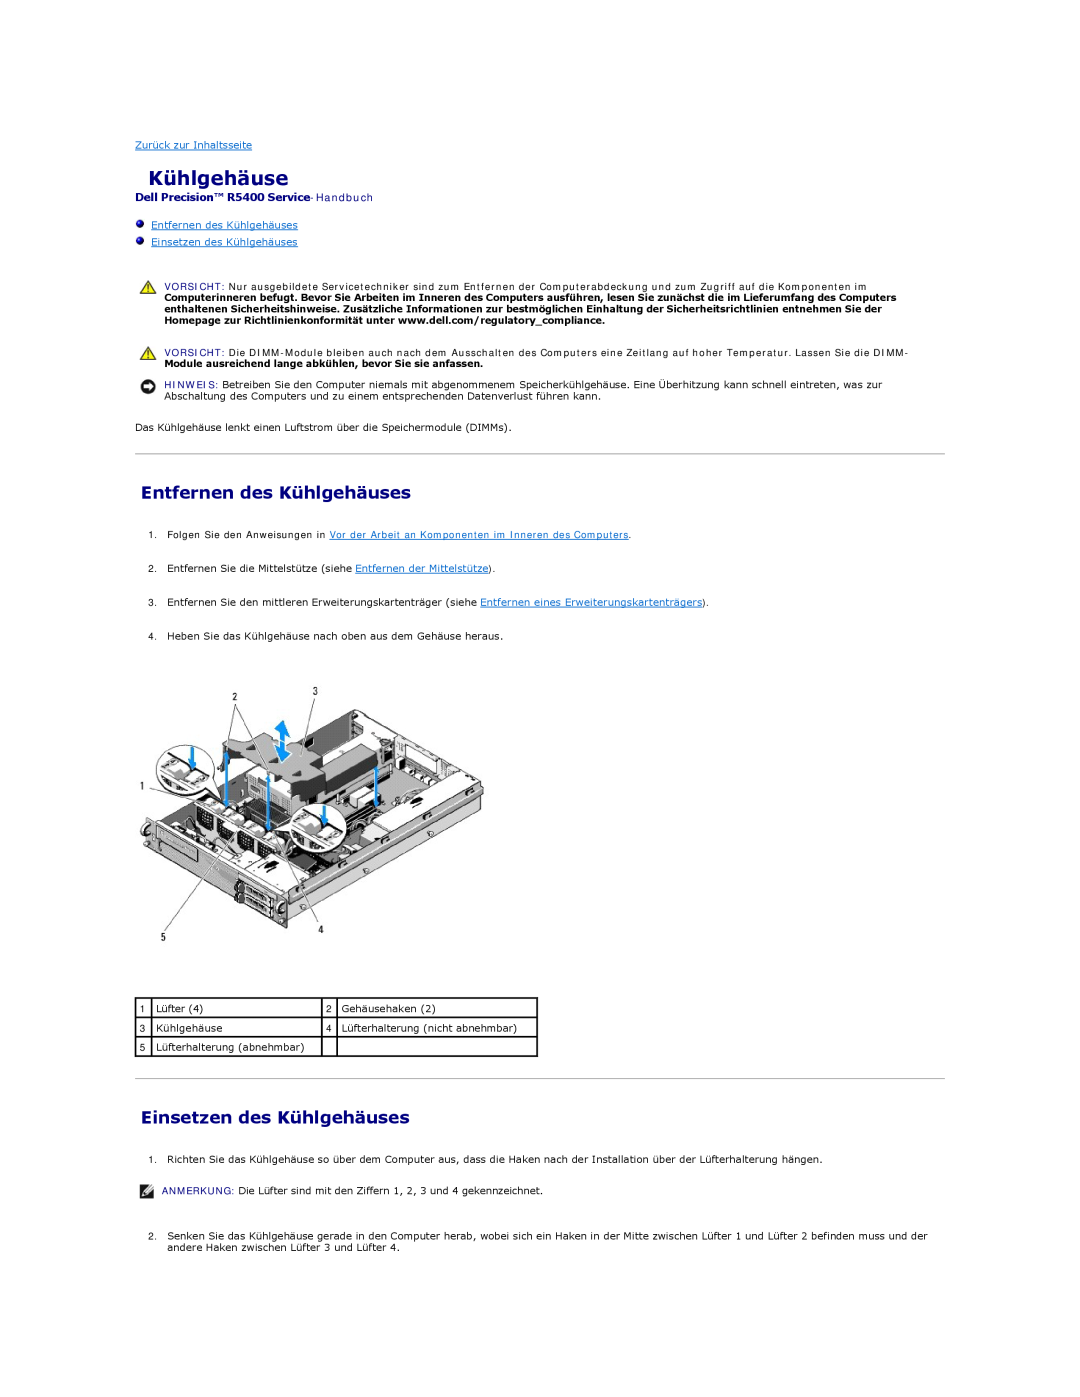 Dell manual Entfernen des Kühlgehäuses, Einsetzen des Kühlgehäuses, Dell Precision R5400 Service-Handbuch 